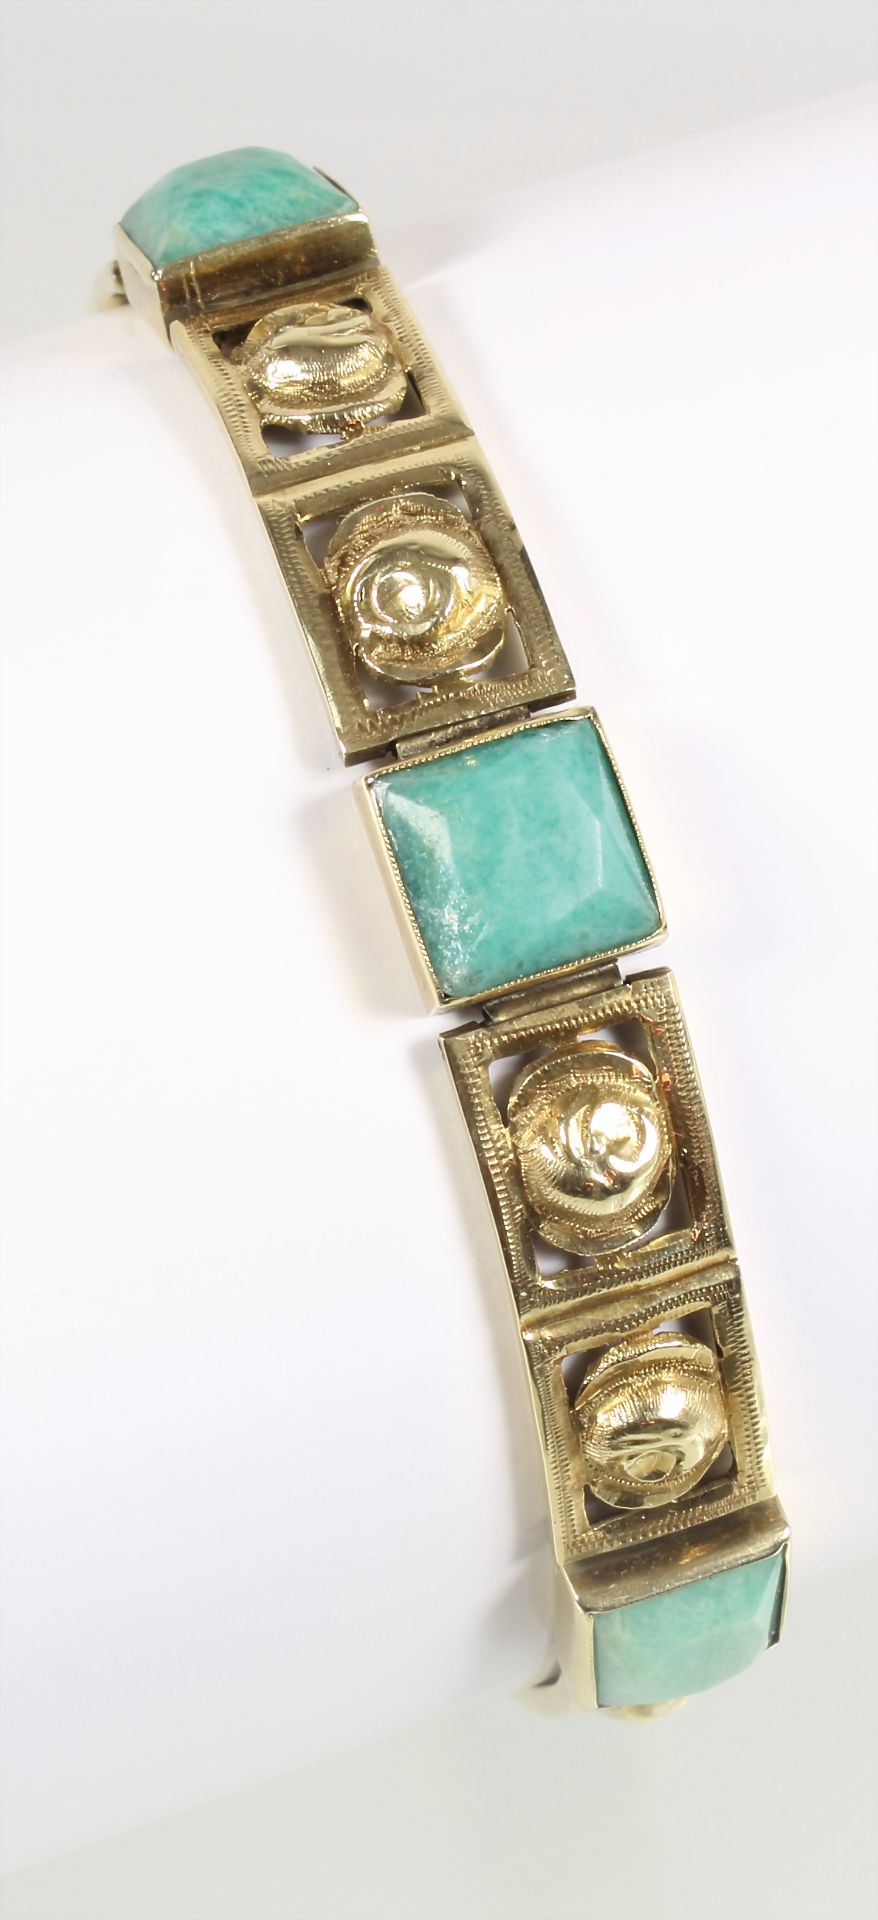 Armband, ART-DECO 1930/40er Jahre, GG 585/000, 6 quadratische Amazonite, Goldelemente mit ... - Bild 2 aus 2